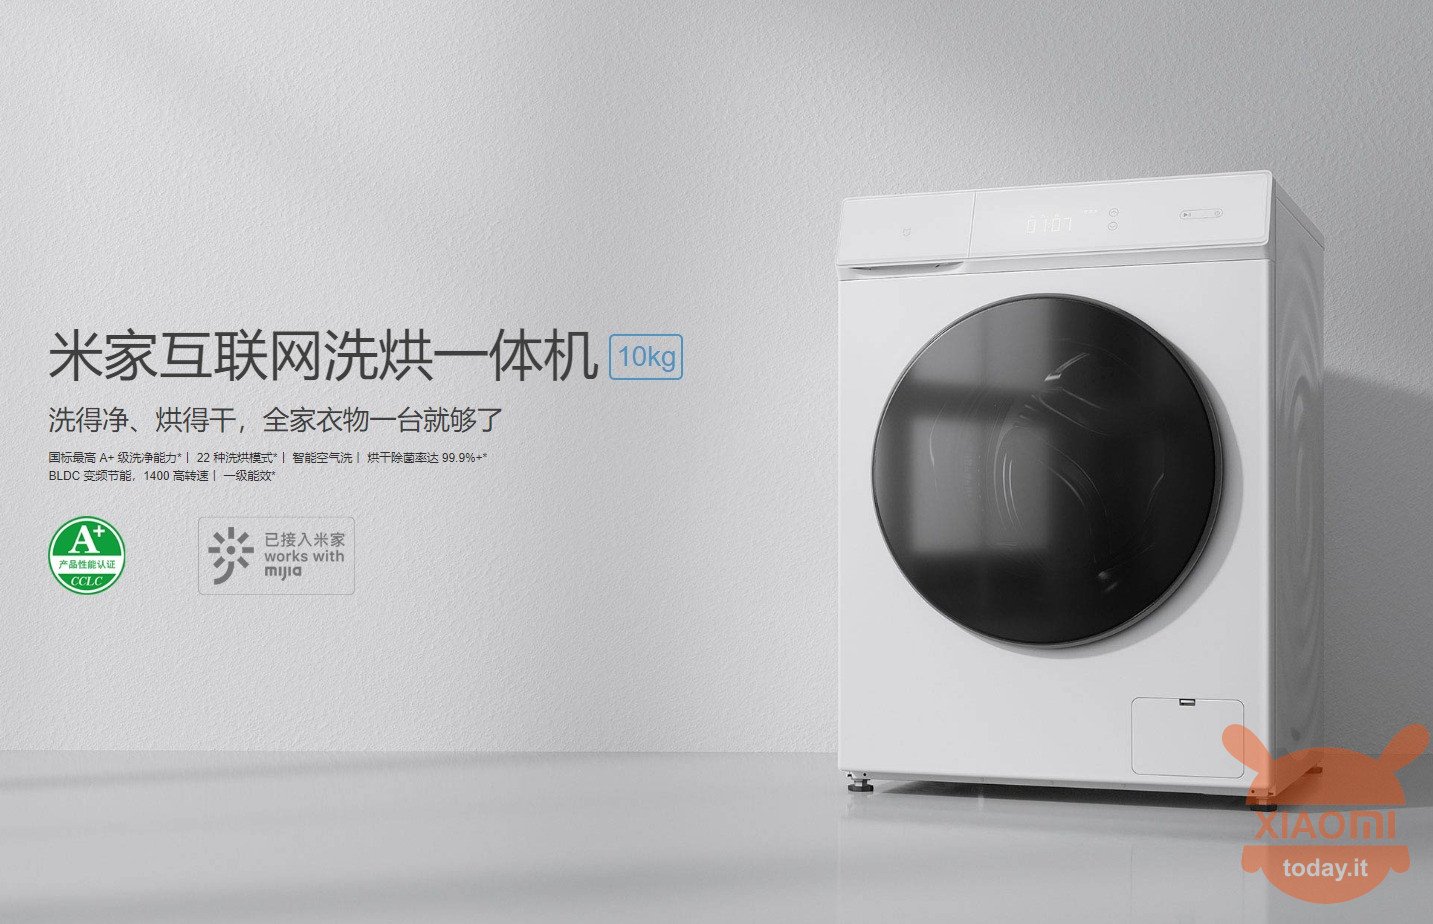 Xiaomi Mijia Direct Drive Washing and Drying Machine 10kg